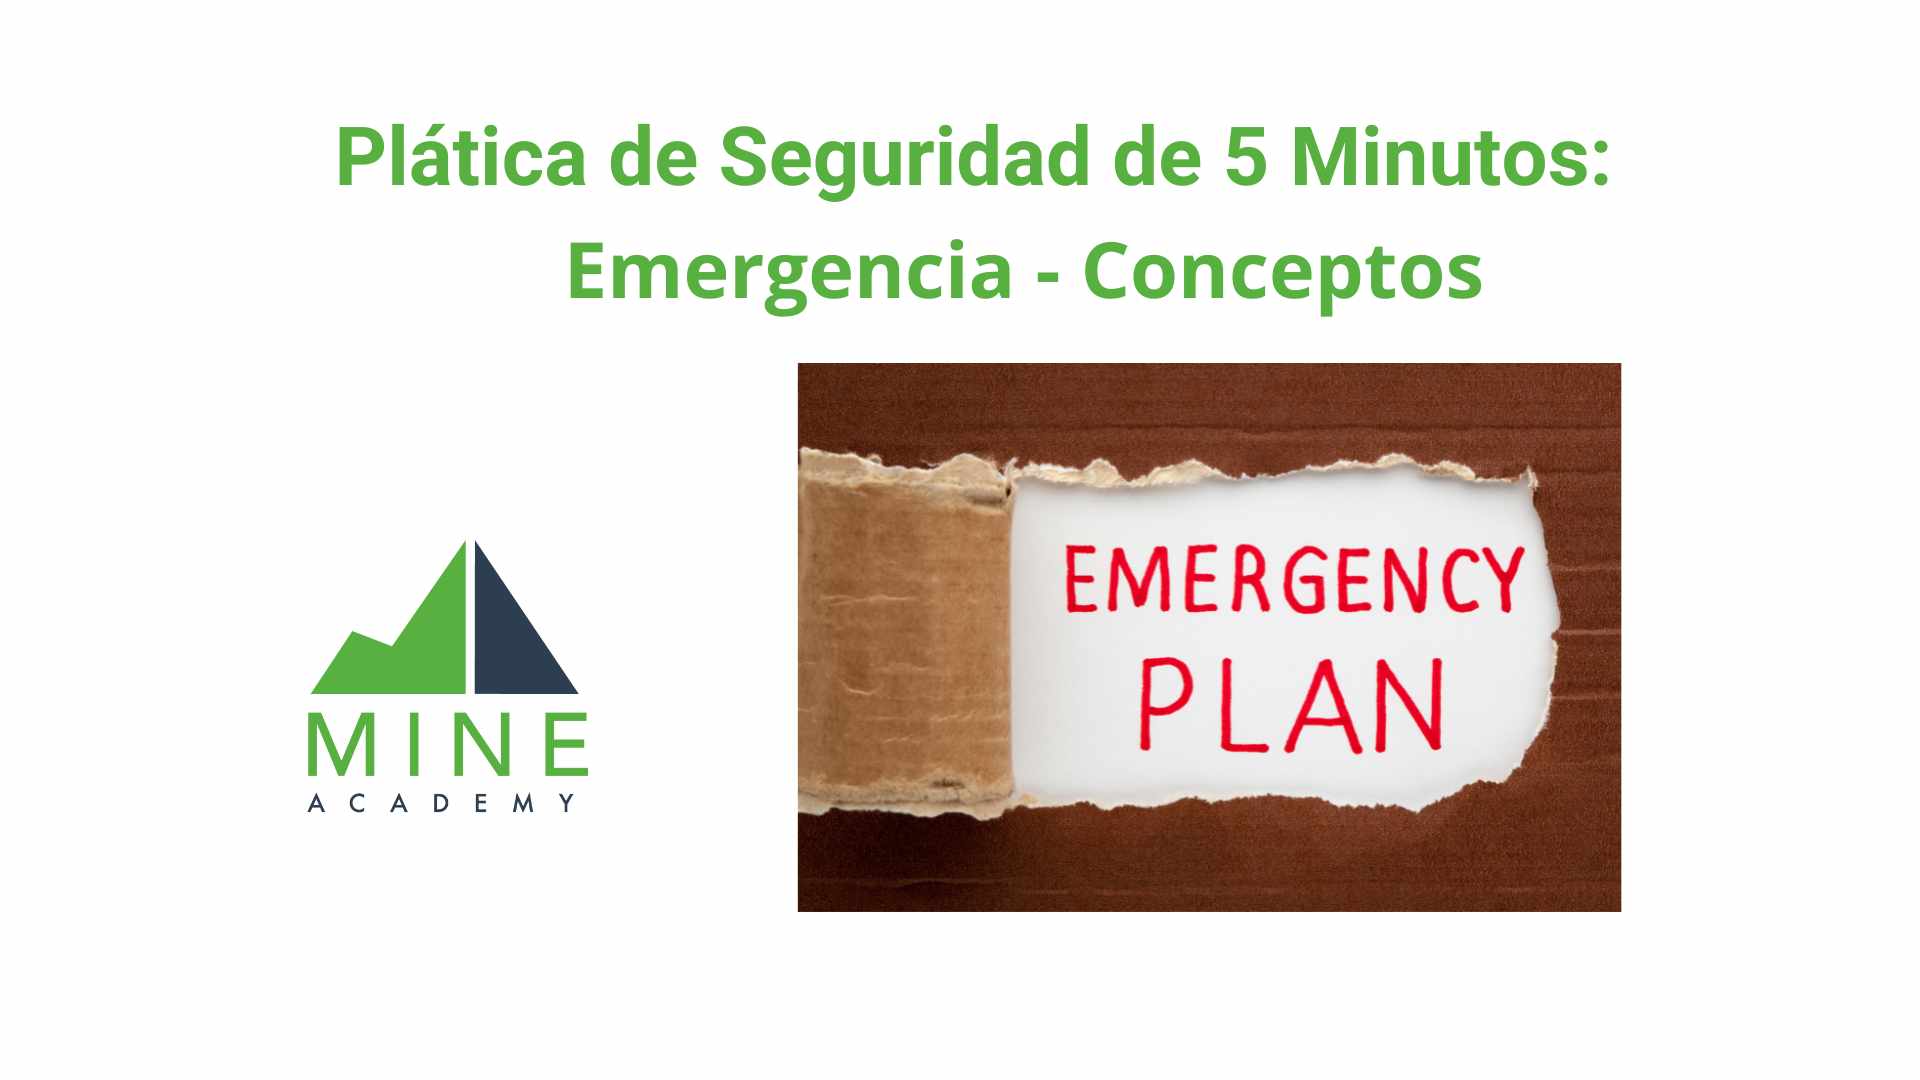 Platica de seguridad de 5 minutos: Emergencia - Conceptos